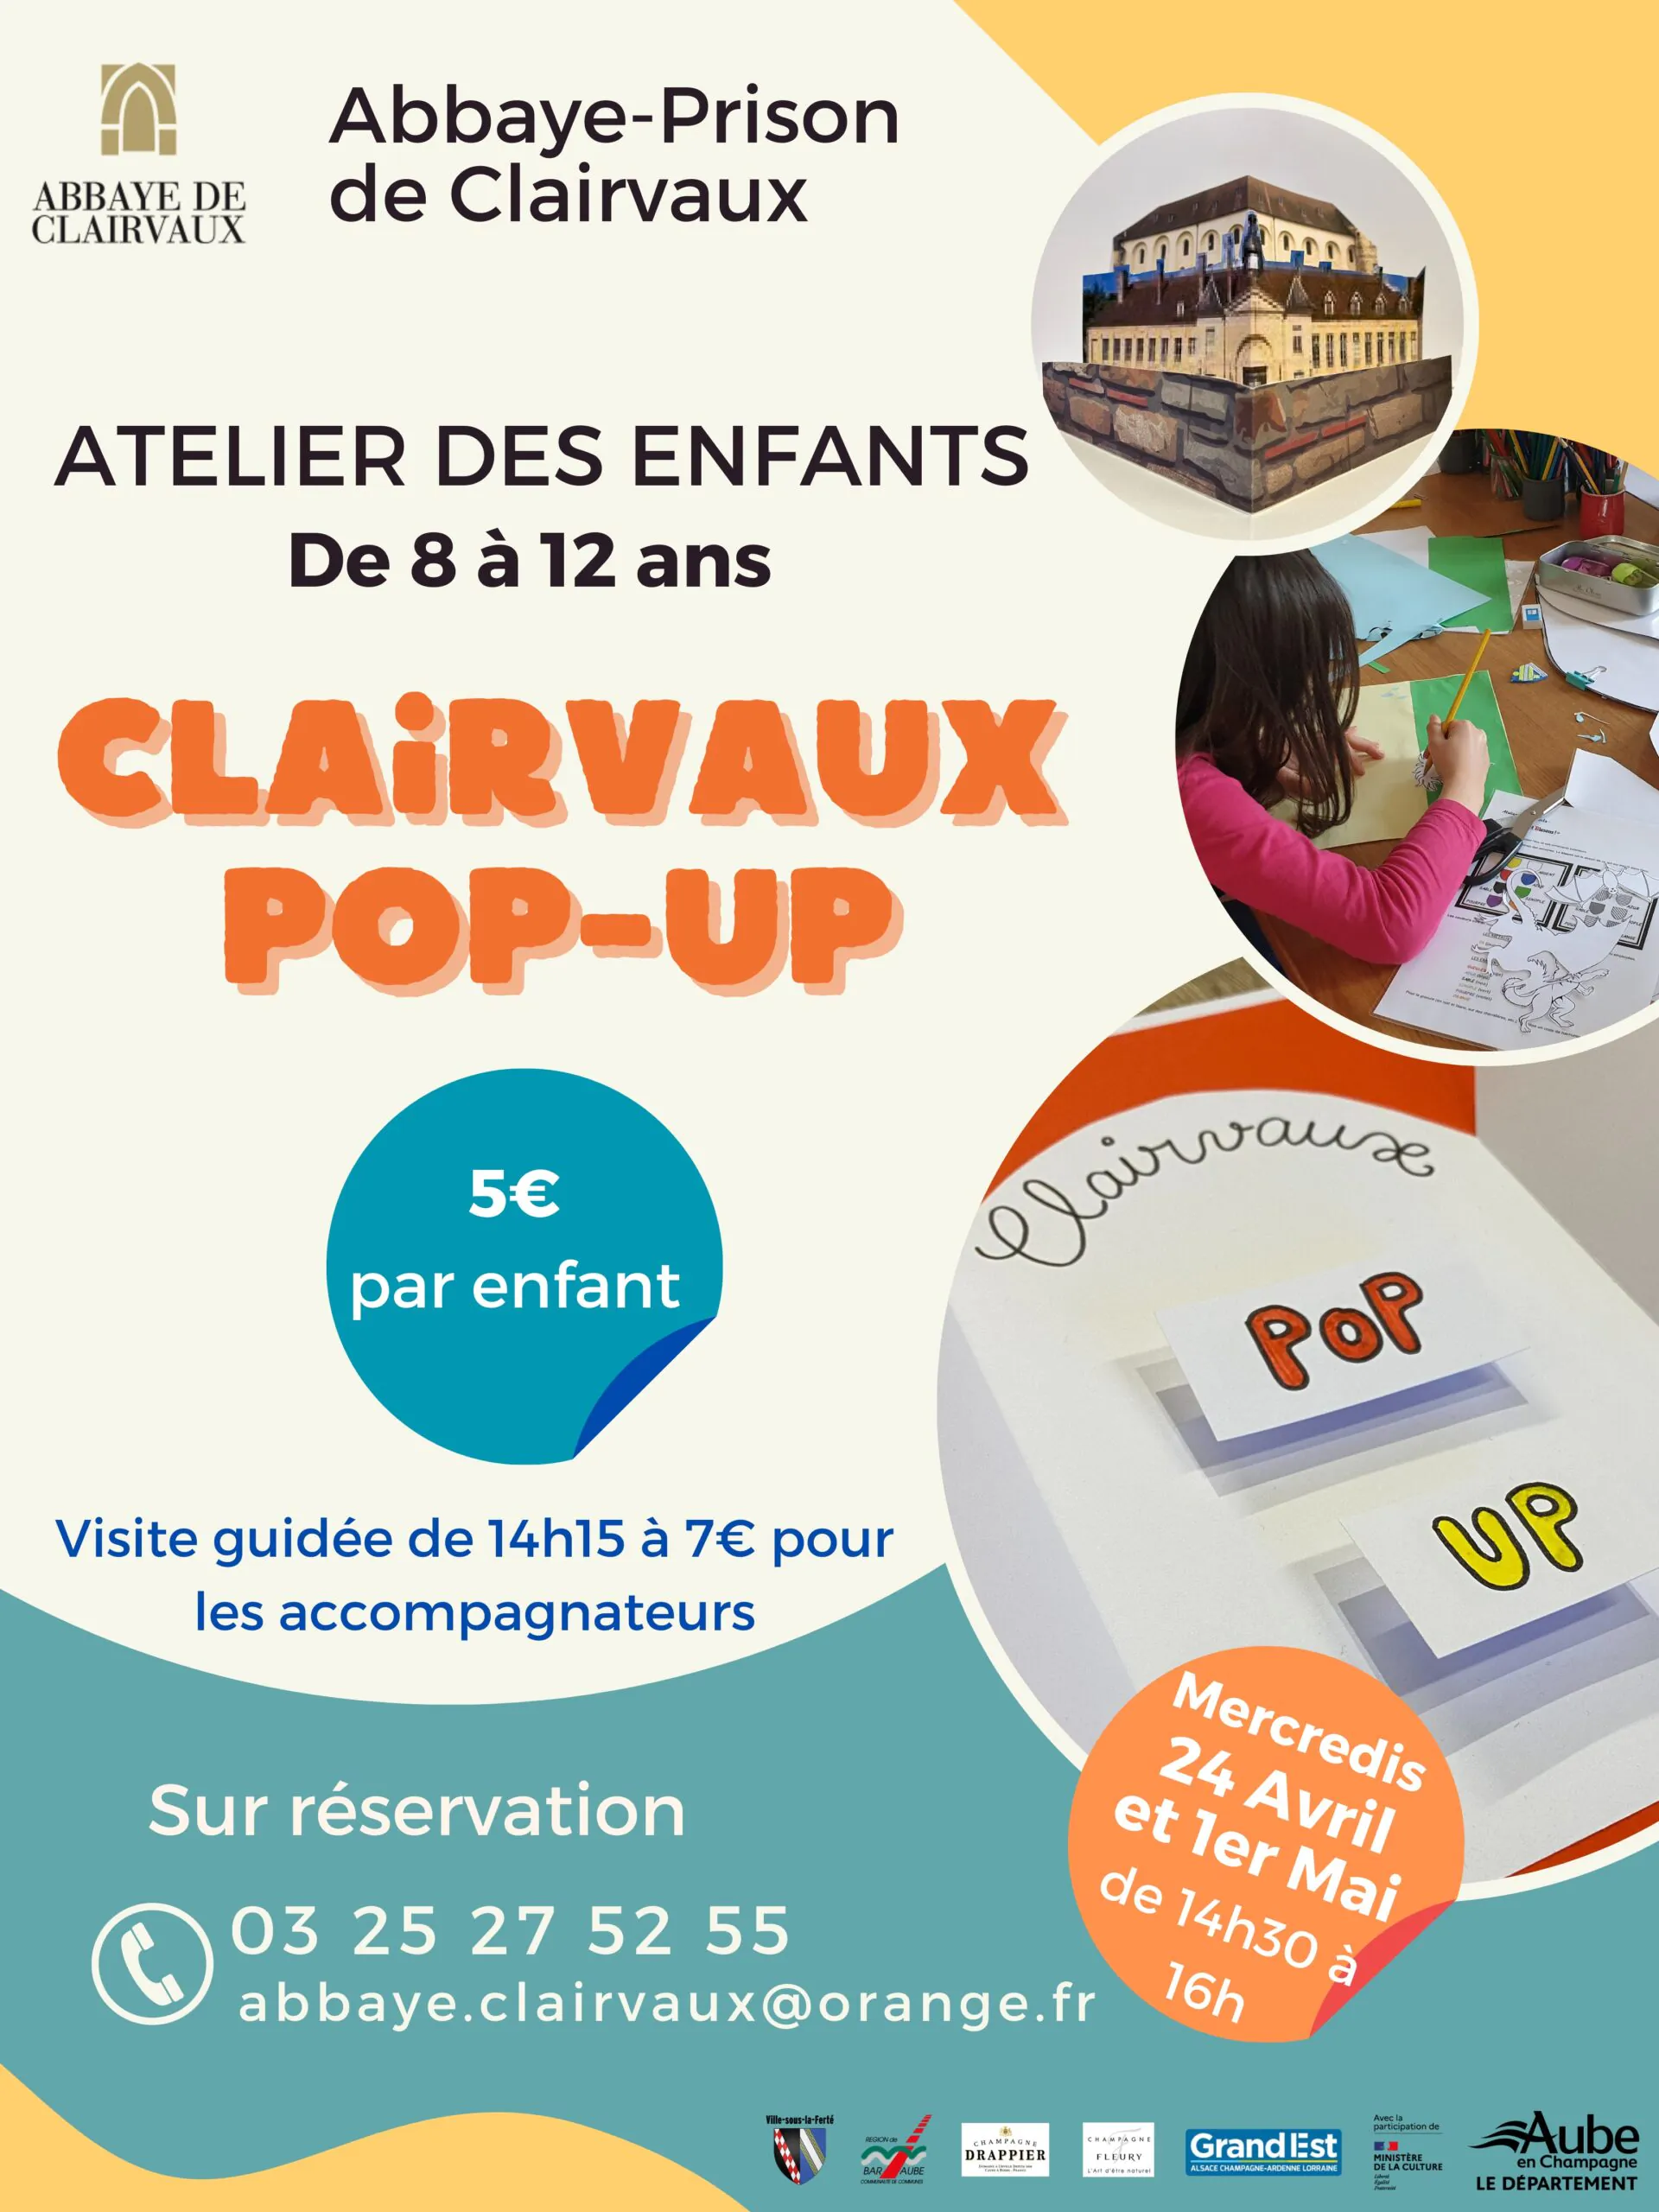 Atelier des enfants "Clairvaux Pop-up"